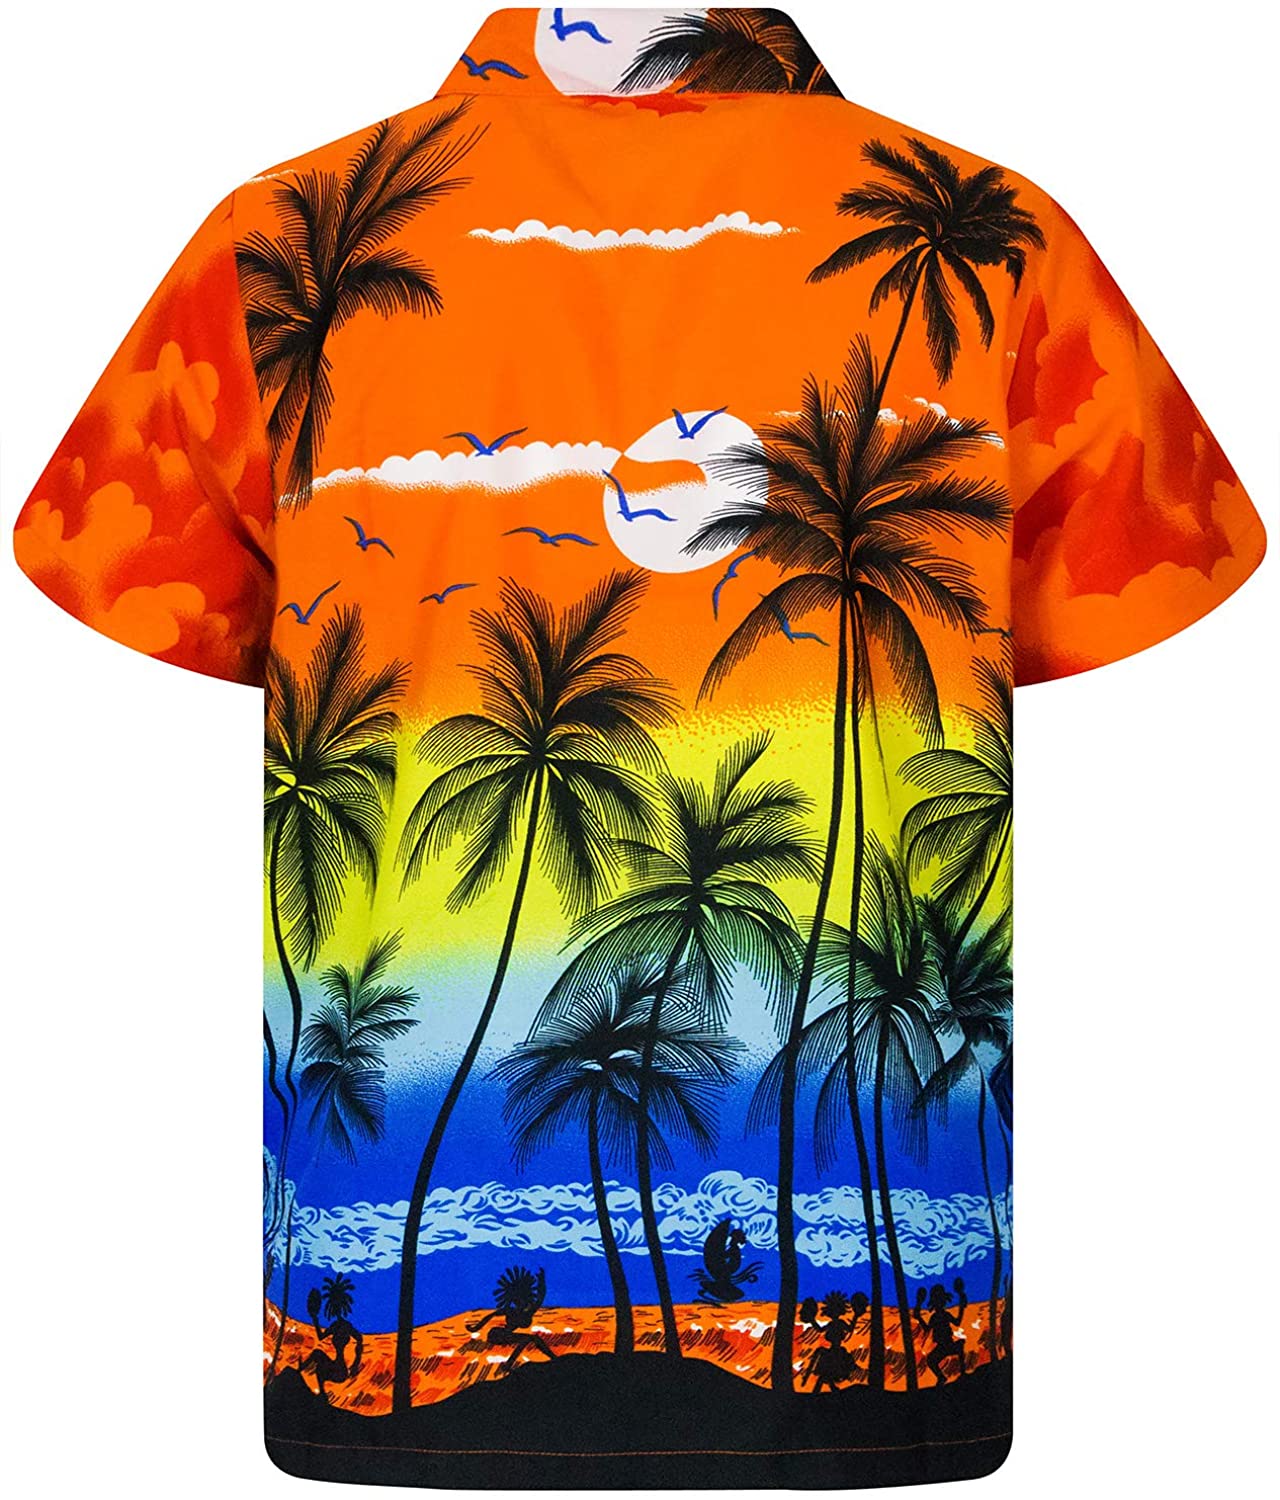 King Kameha Hawaiian Shirt for Men Funky Casual Button Down Very Loud ...